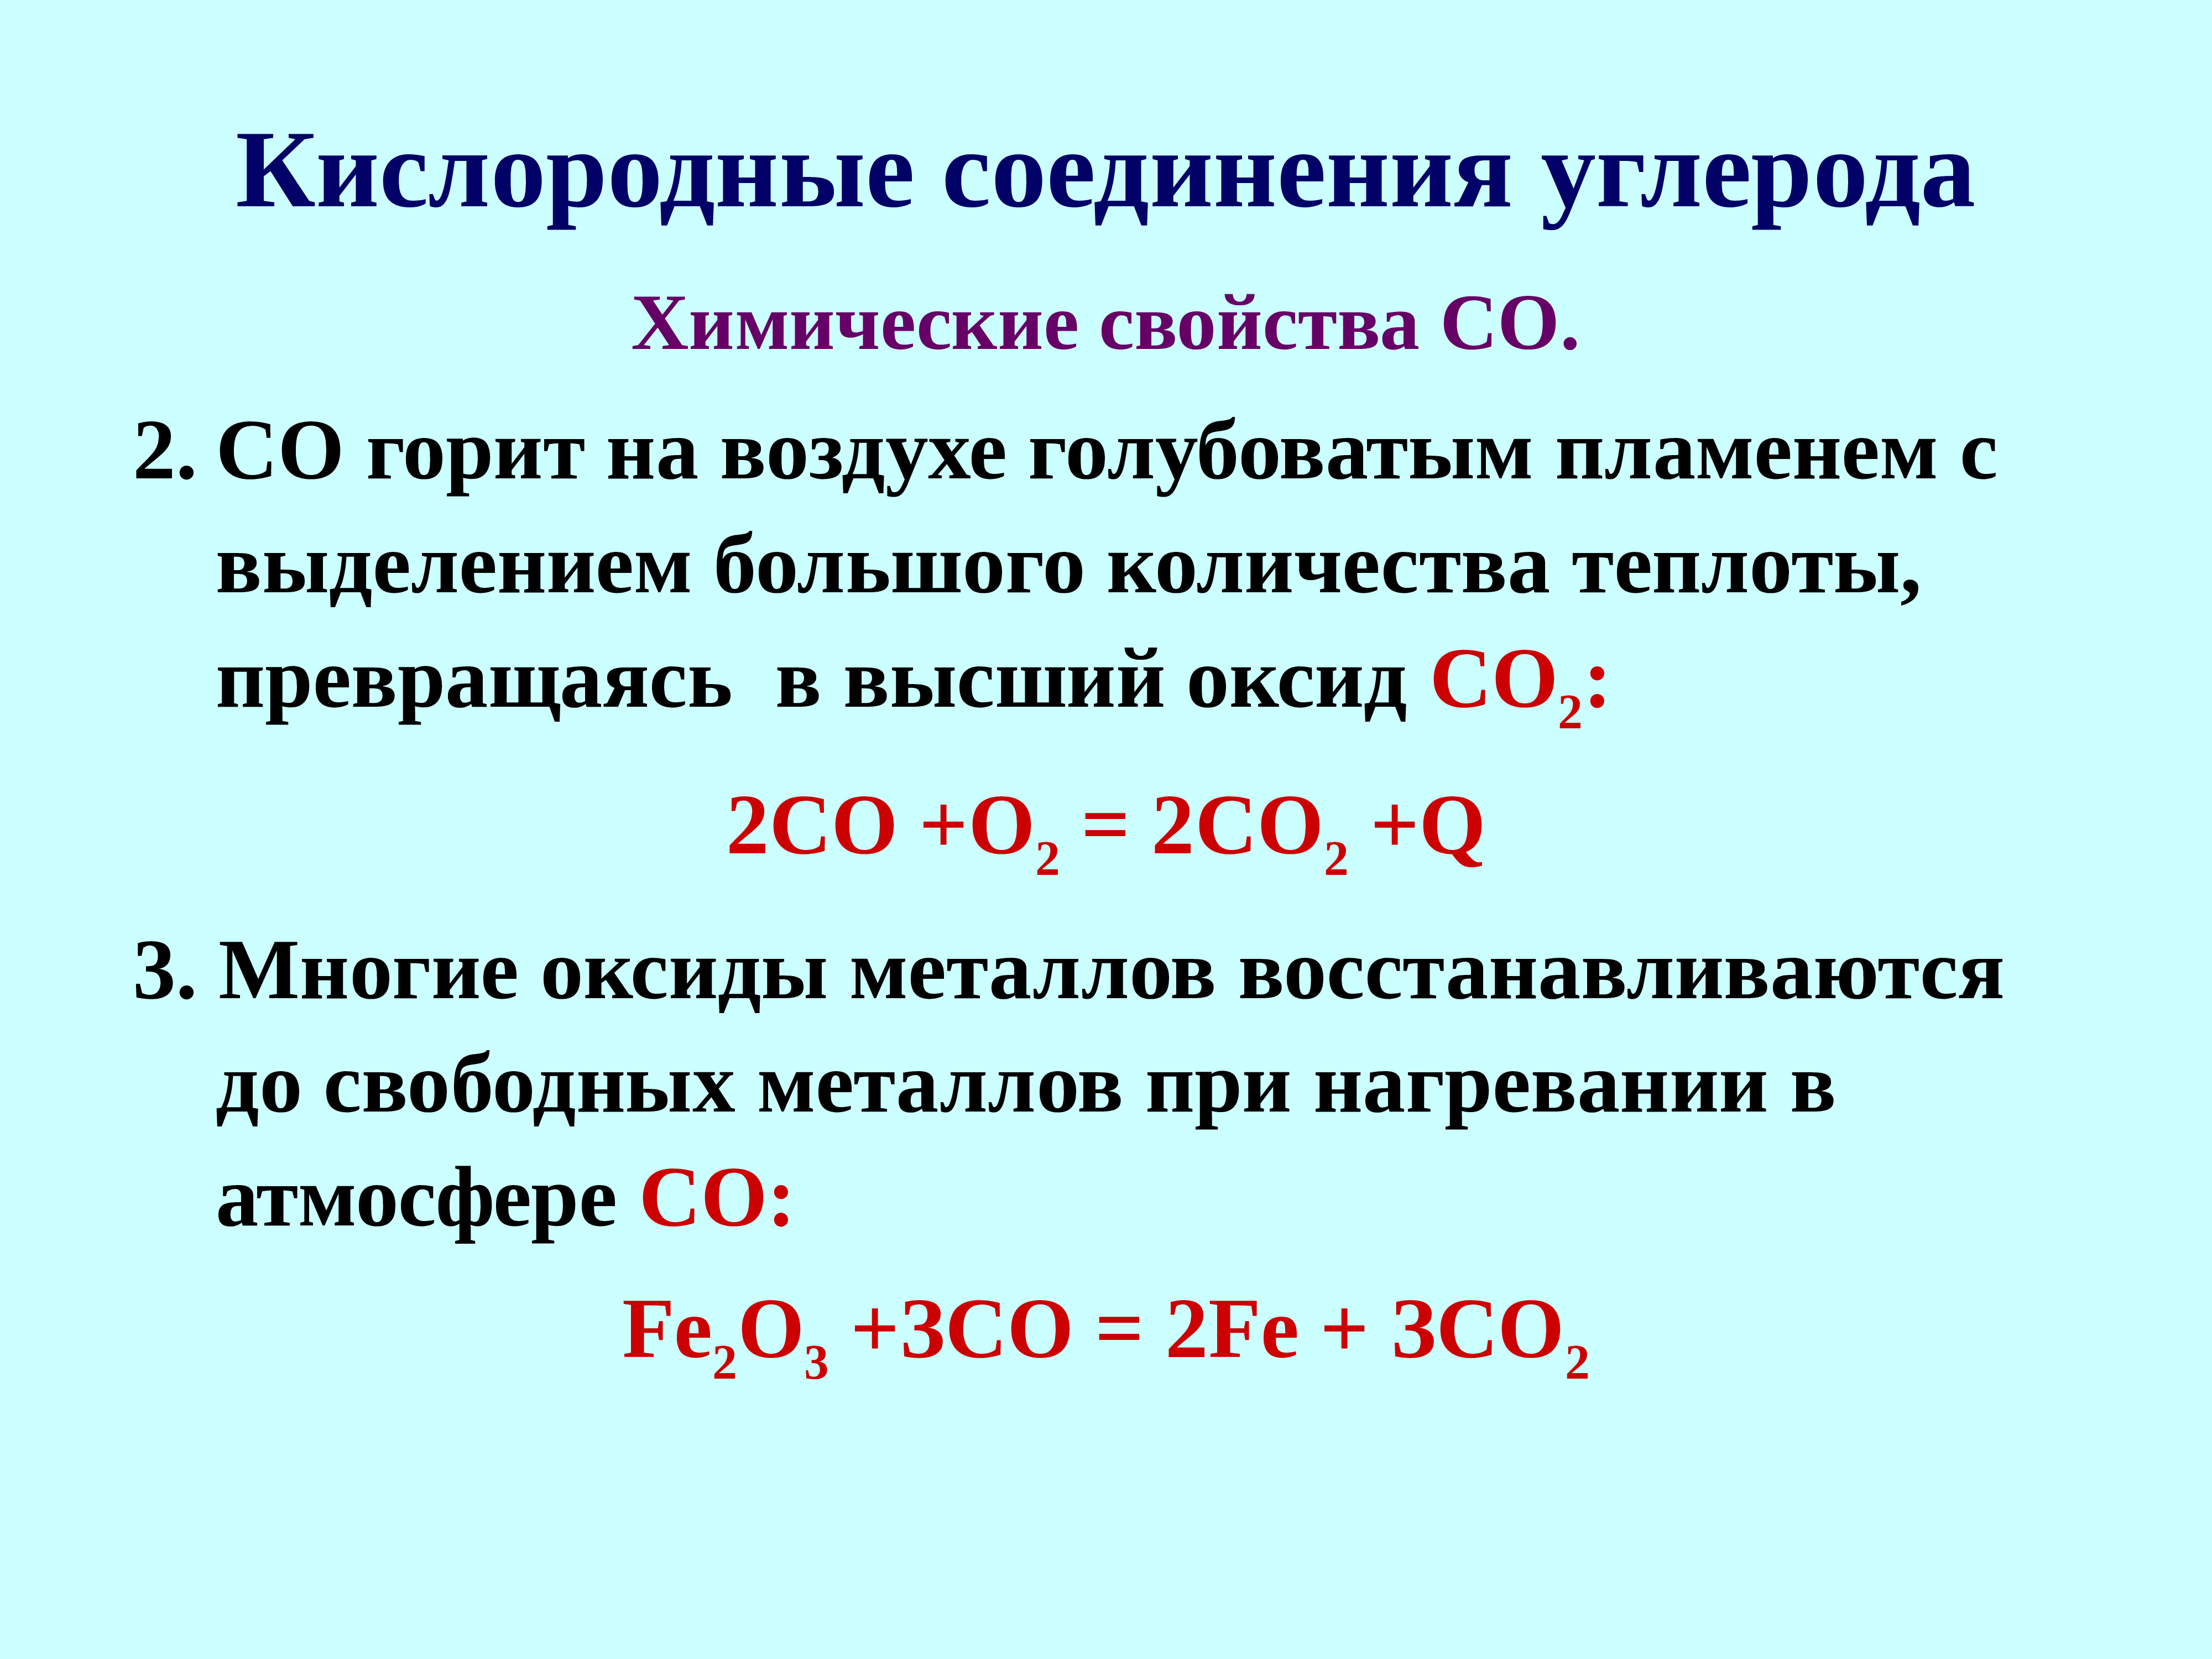 Самостоятельная работа соединения углерода. Кислородные соединения. Соединения углерода. Кислородные соединения углерода таблица. Кислородные соединения углерода конспект.